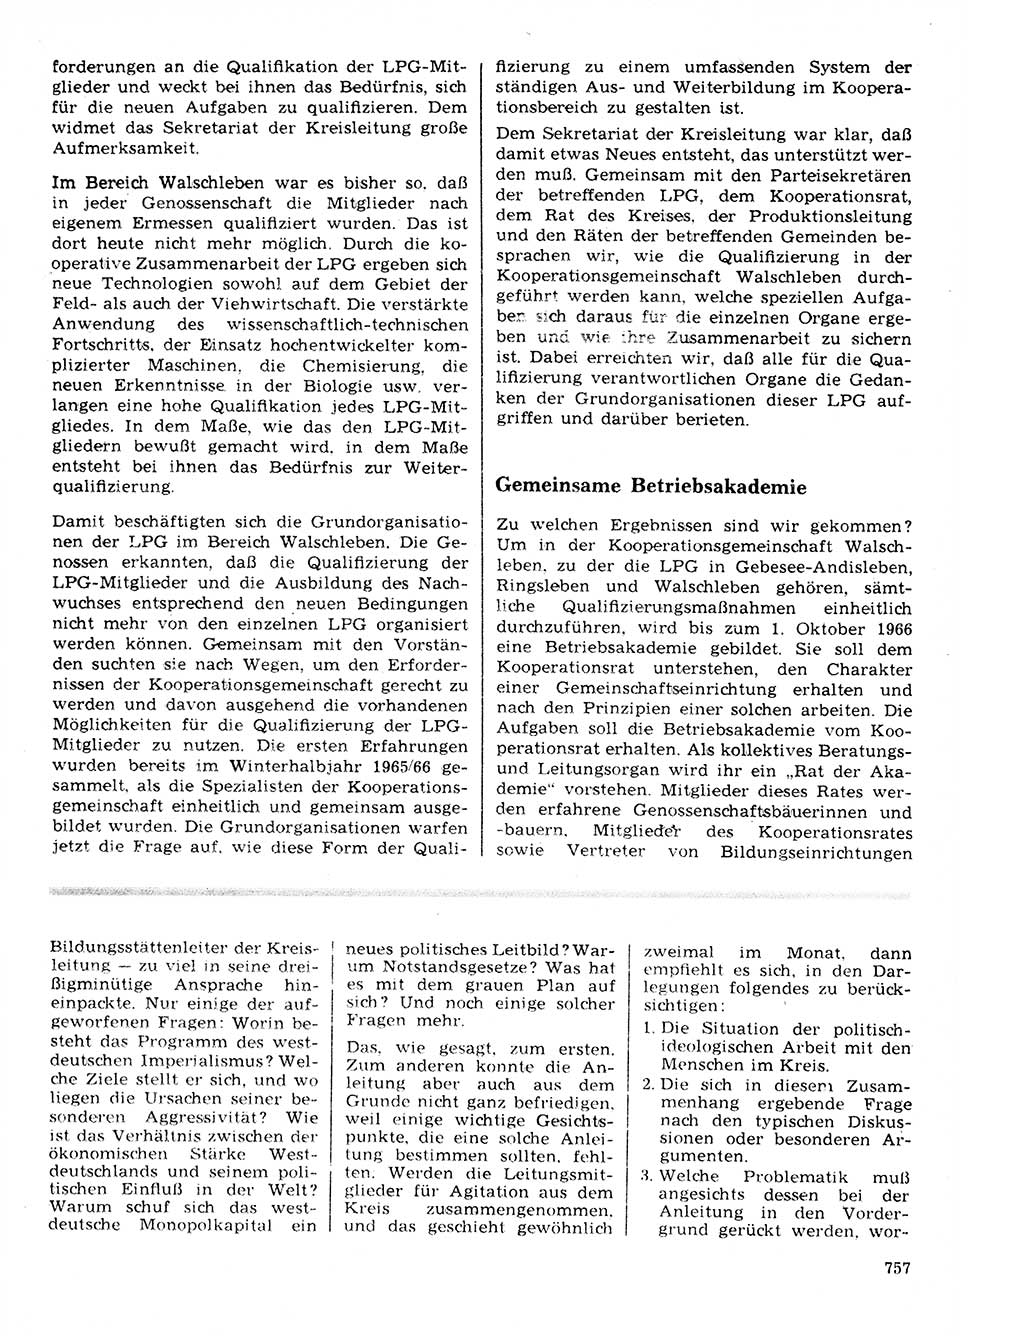 Neuer Weg (NW), Organ des Zentralkomitees (ZK) der SED (Sozialistische Einheitspartei Deutschlands) für Fragen des Parteilebens, 21. Jahrgang [Deutsche Demokratische Republik (DDR)] 1966, Seite 757 (NW ZK SED DDR 1966, S. 757)